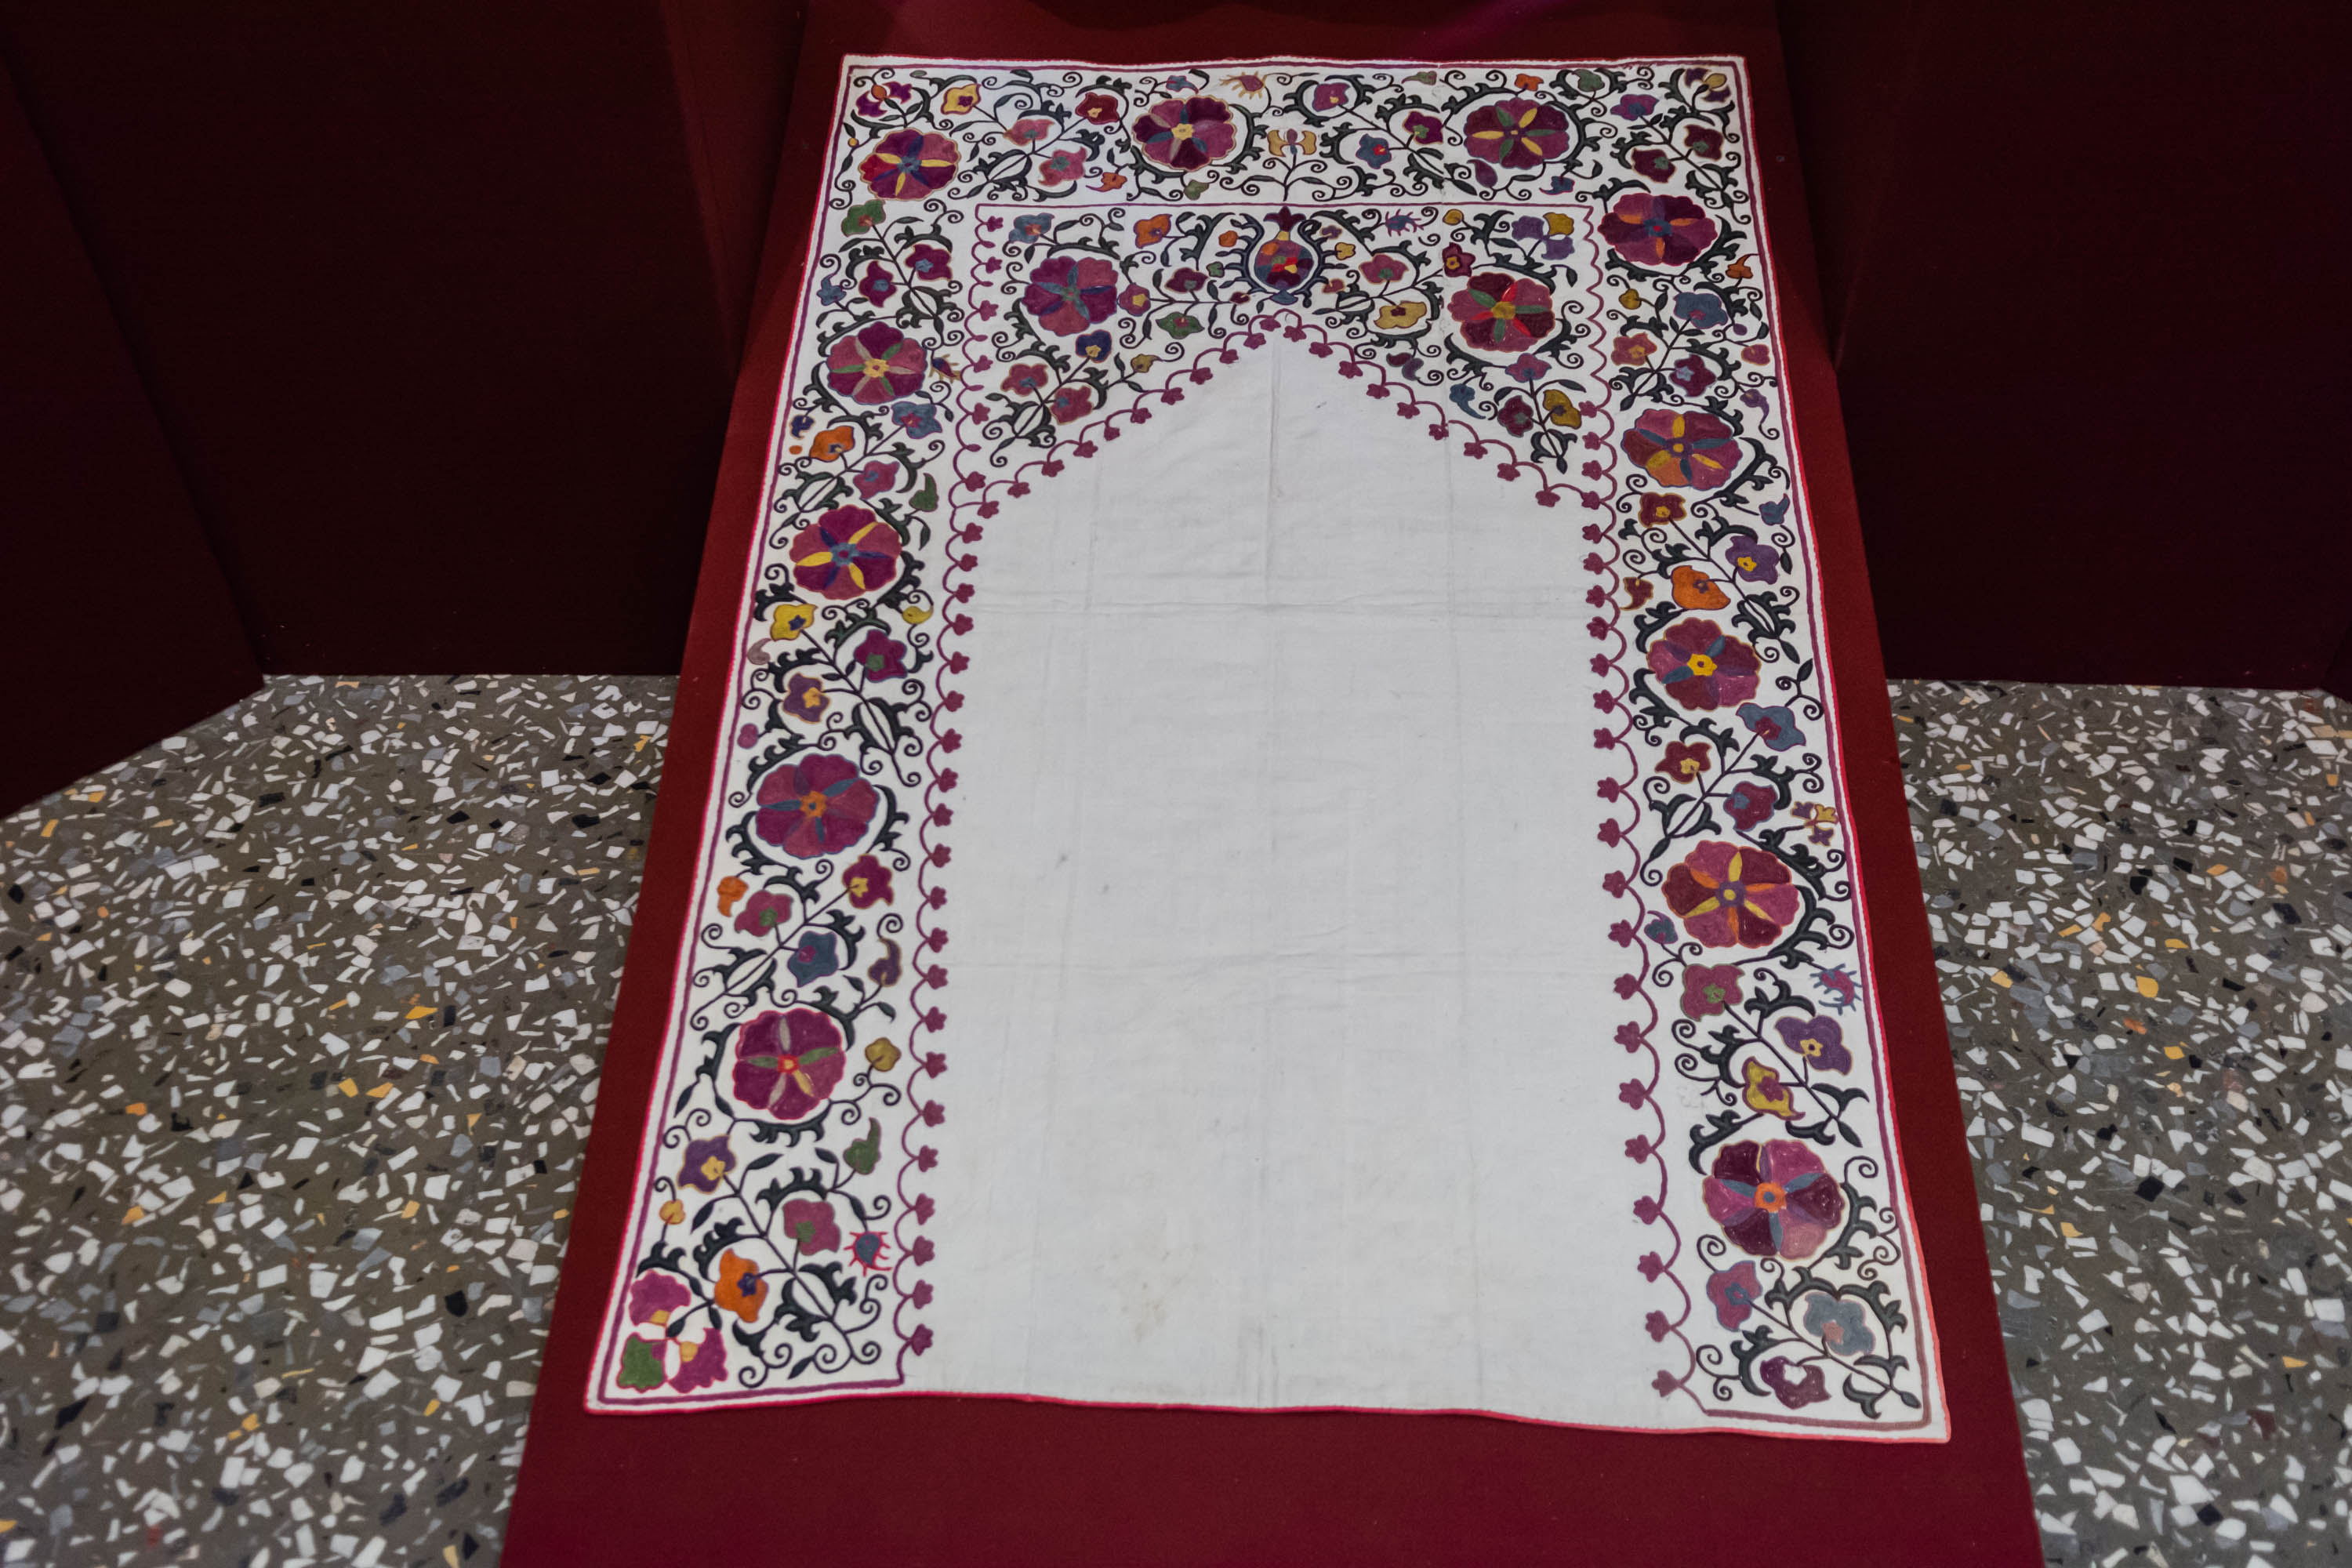 Шелковые нити Узбекистана — традиционные вышивки и ткани9